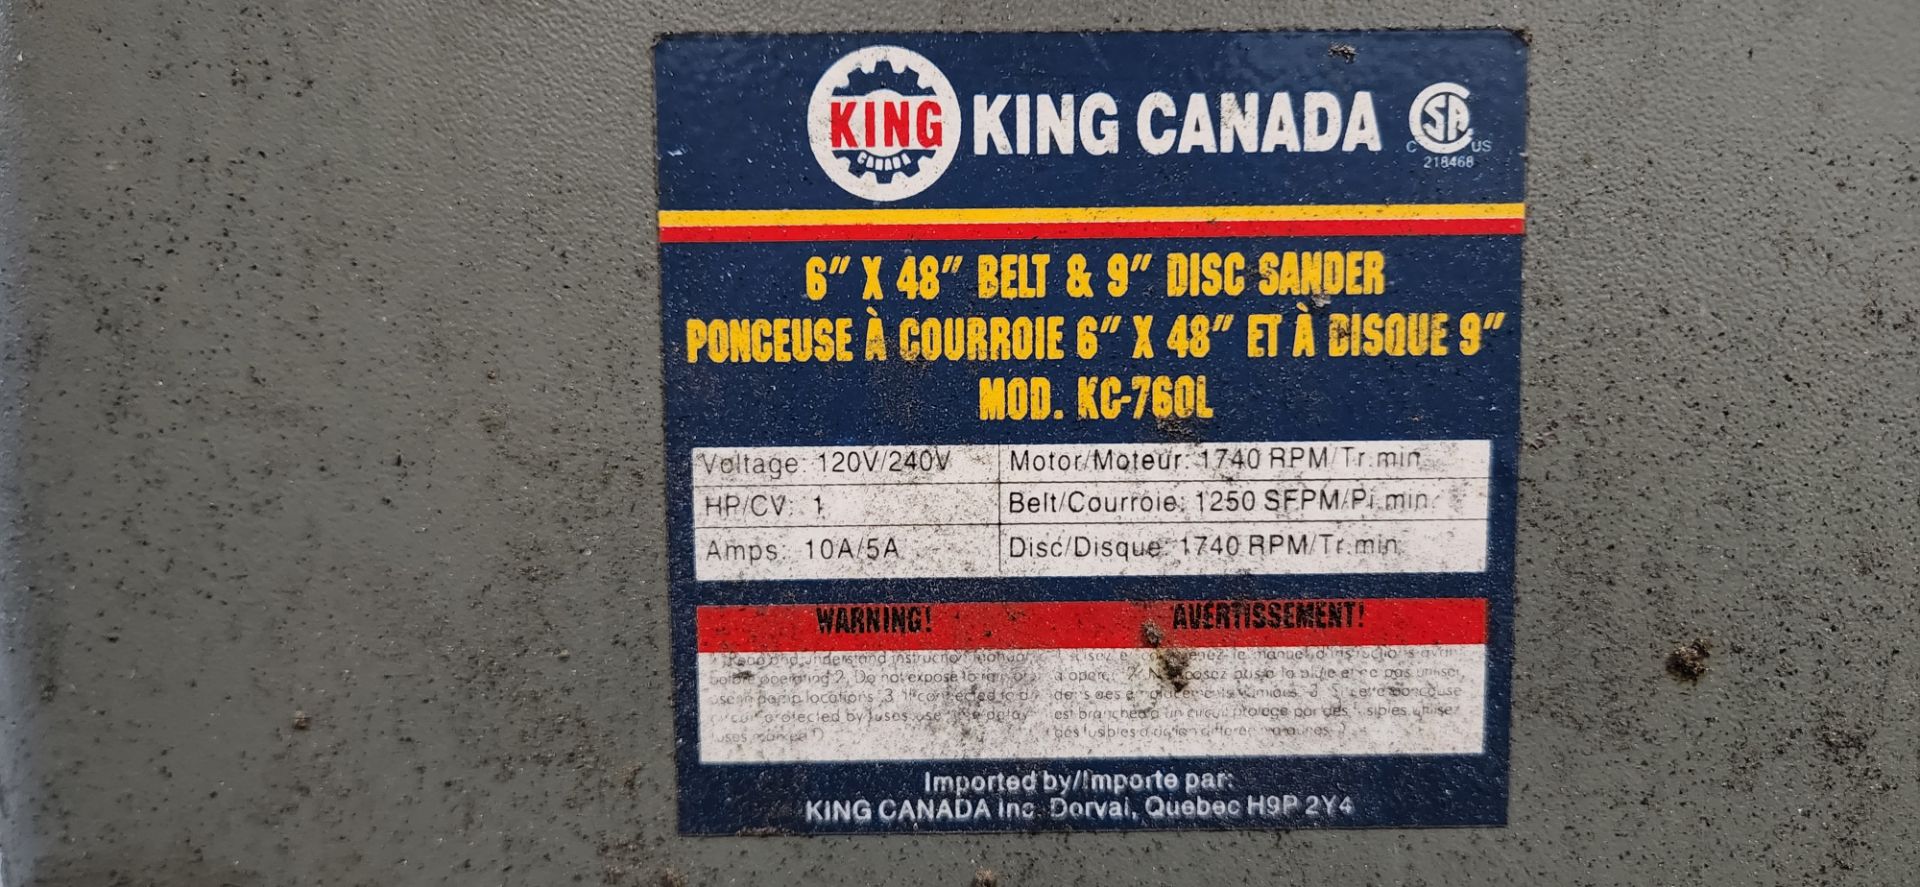 KING CANADA EDGE & BELT SANDER, 6” X 48” BELT, 9” DISC - Image 3 of 4